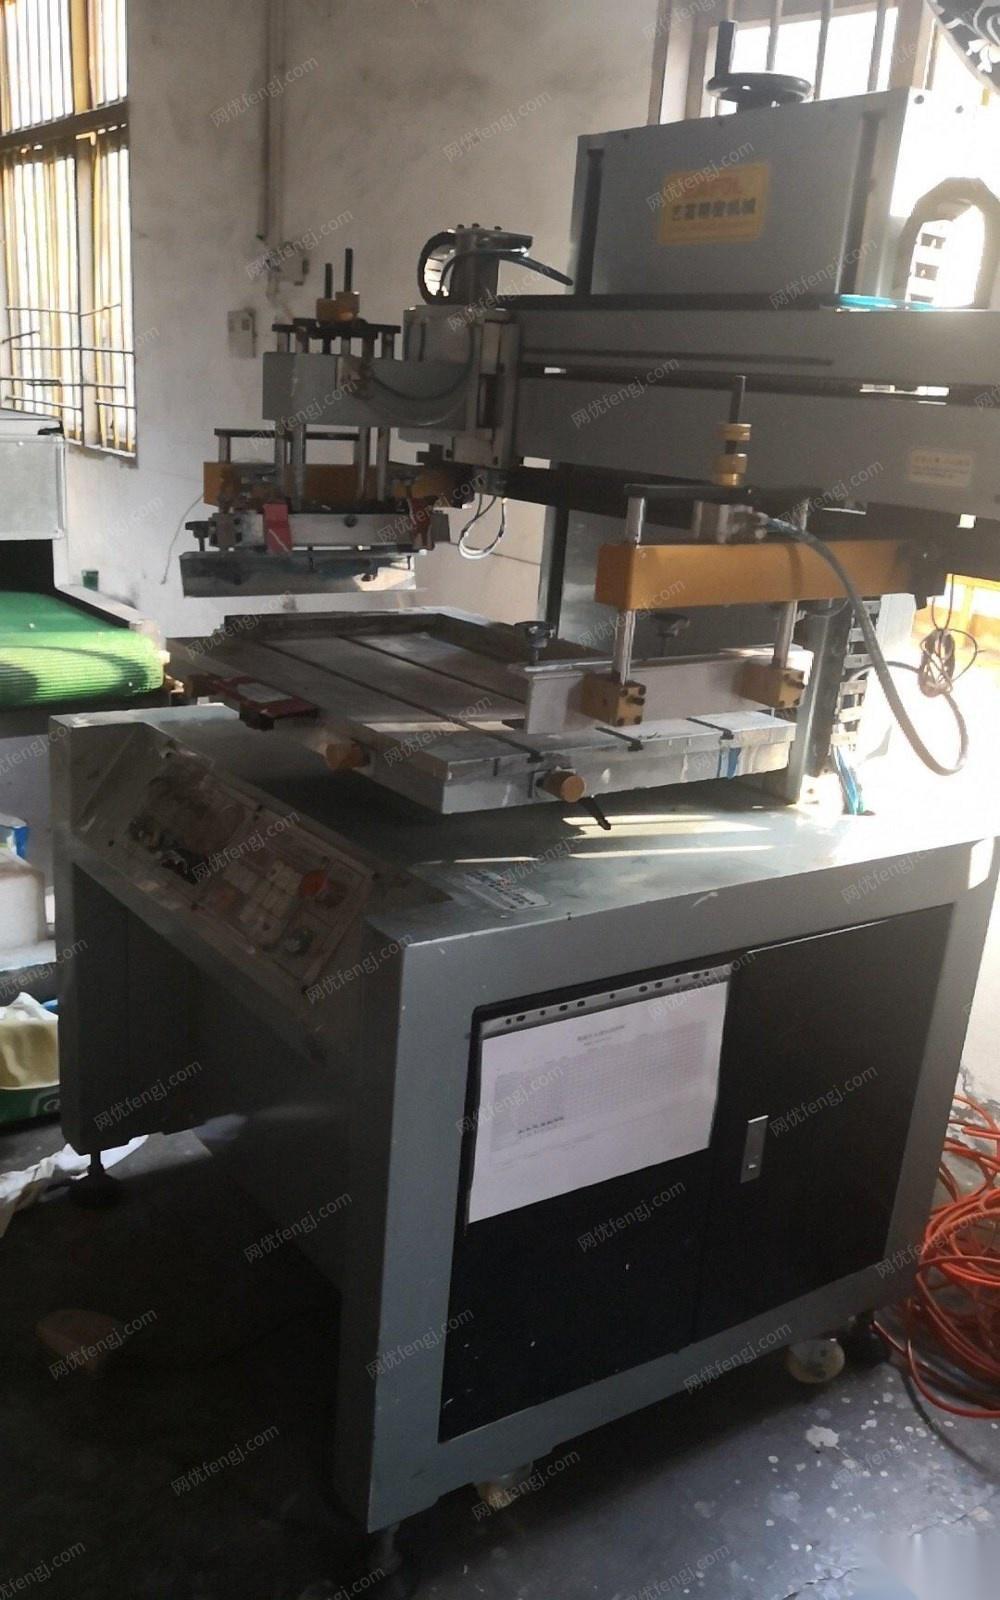 重庆铜梁区全自动丝网印刷机 13000元出售